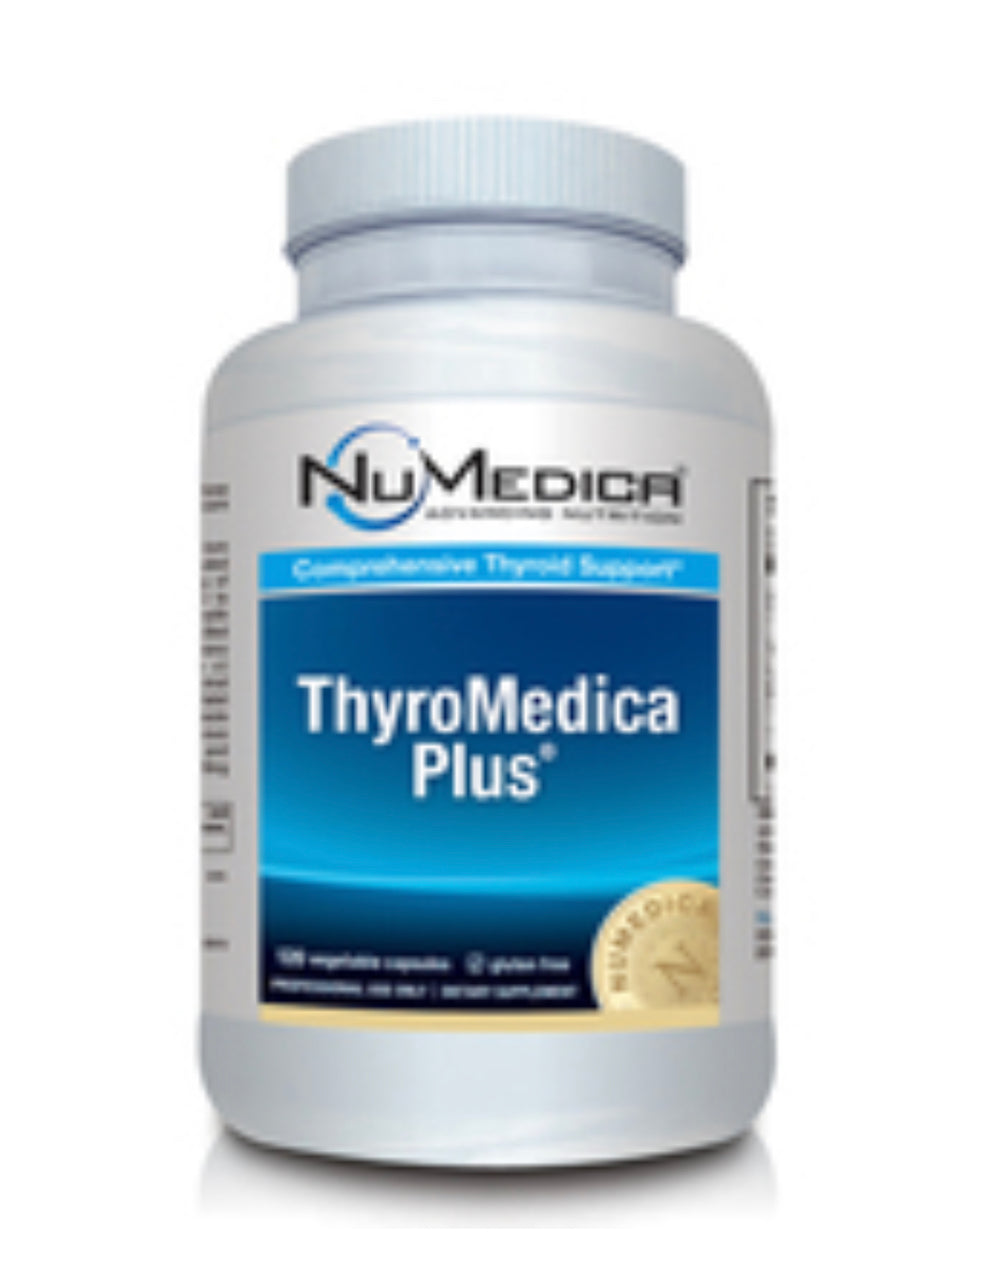 ThyroMedica Plus